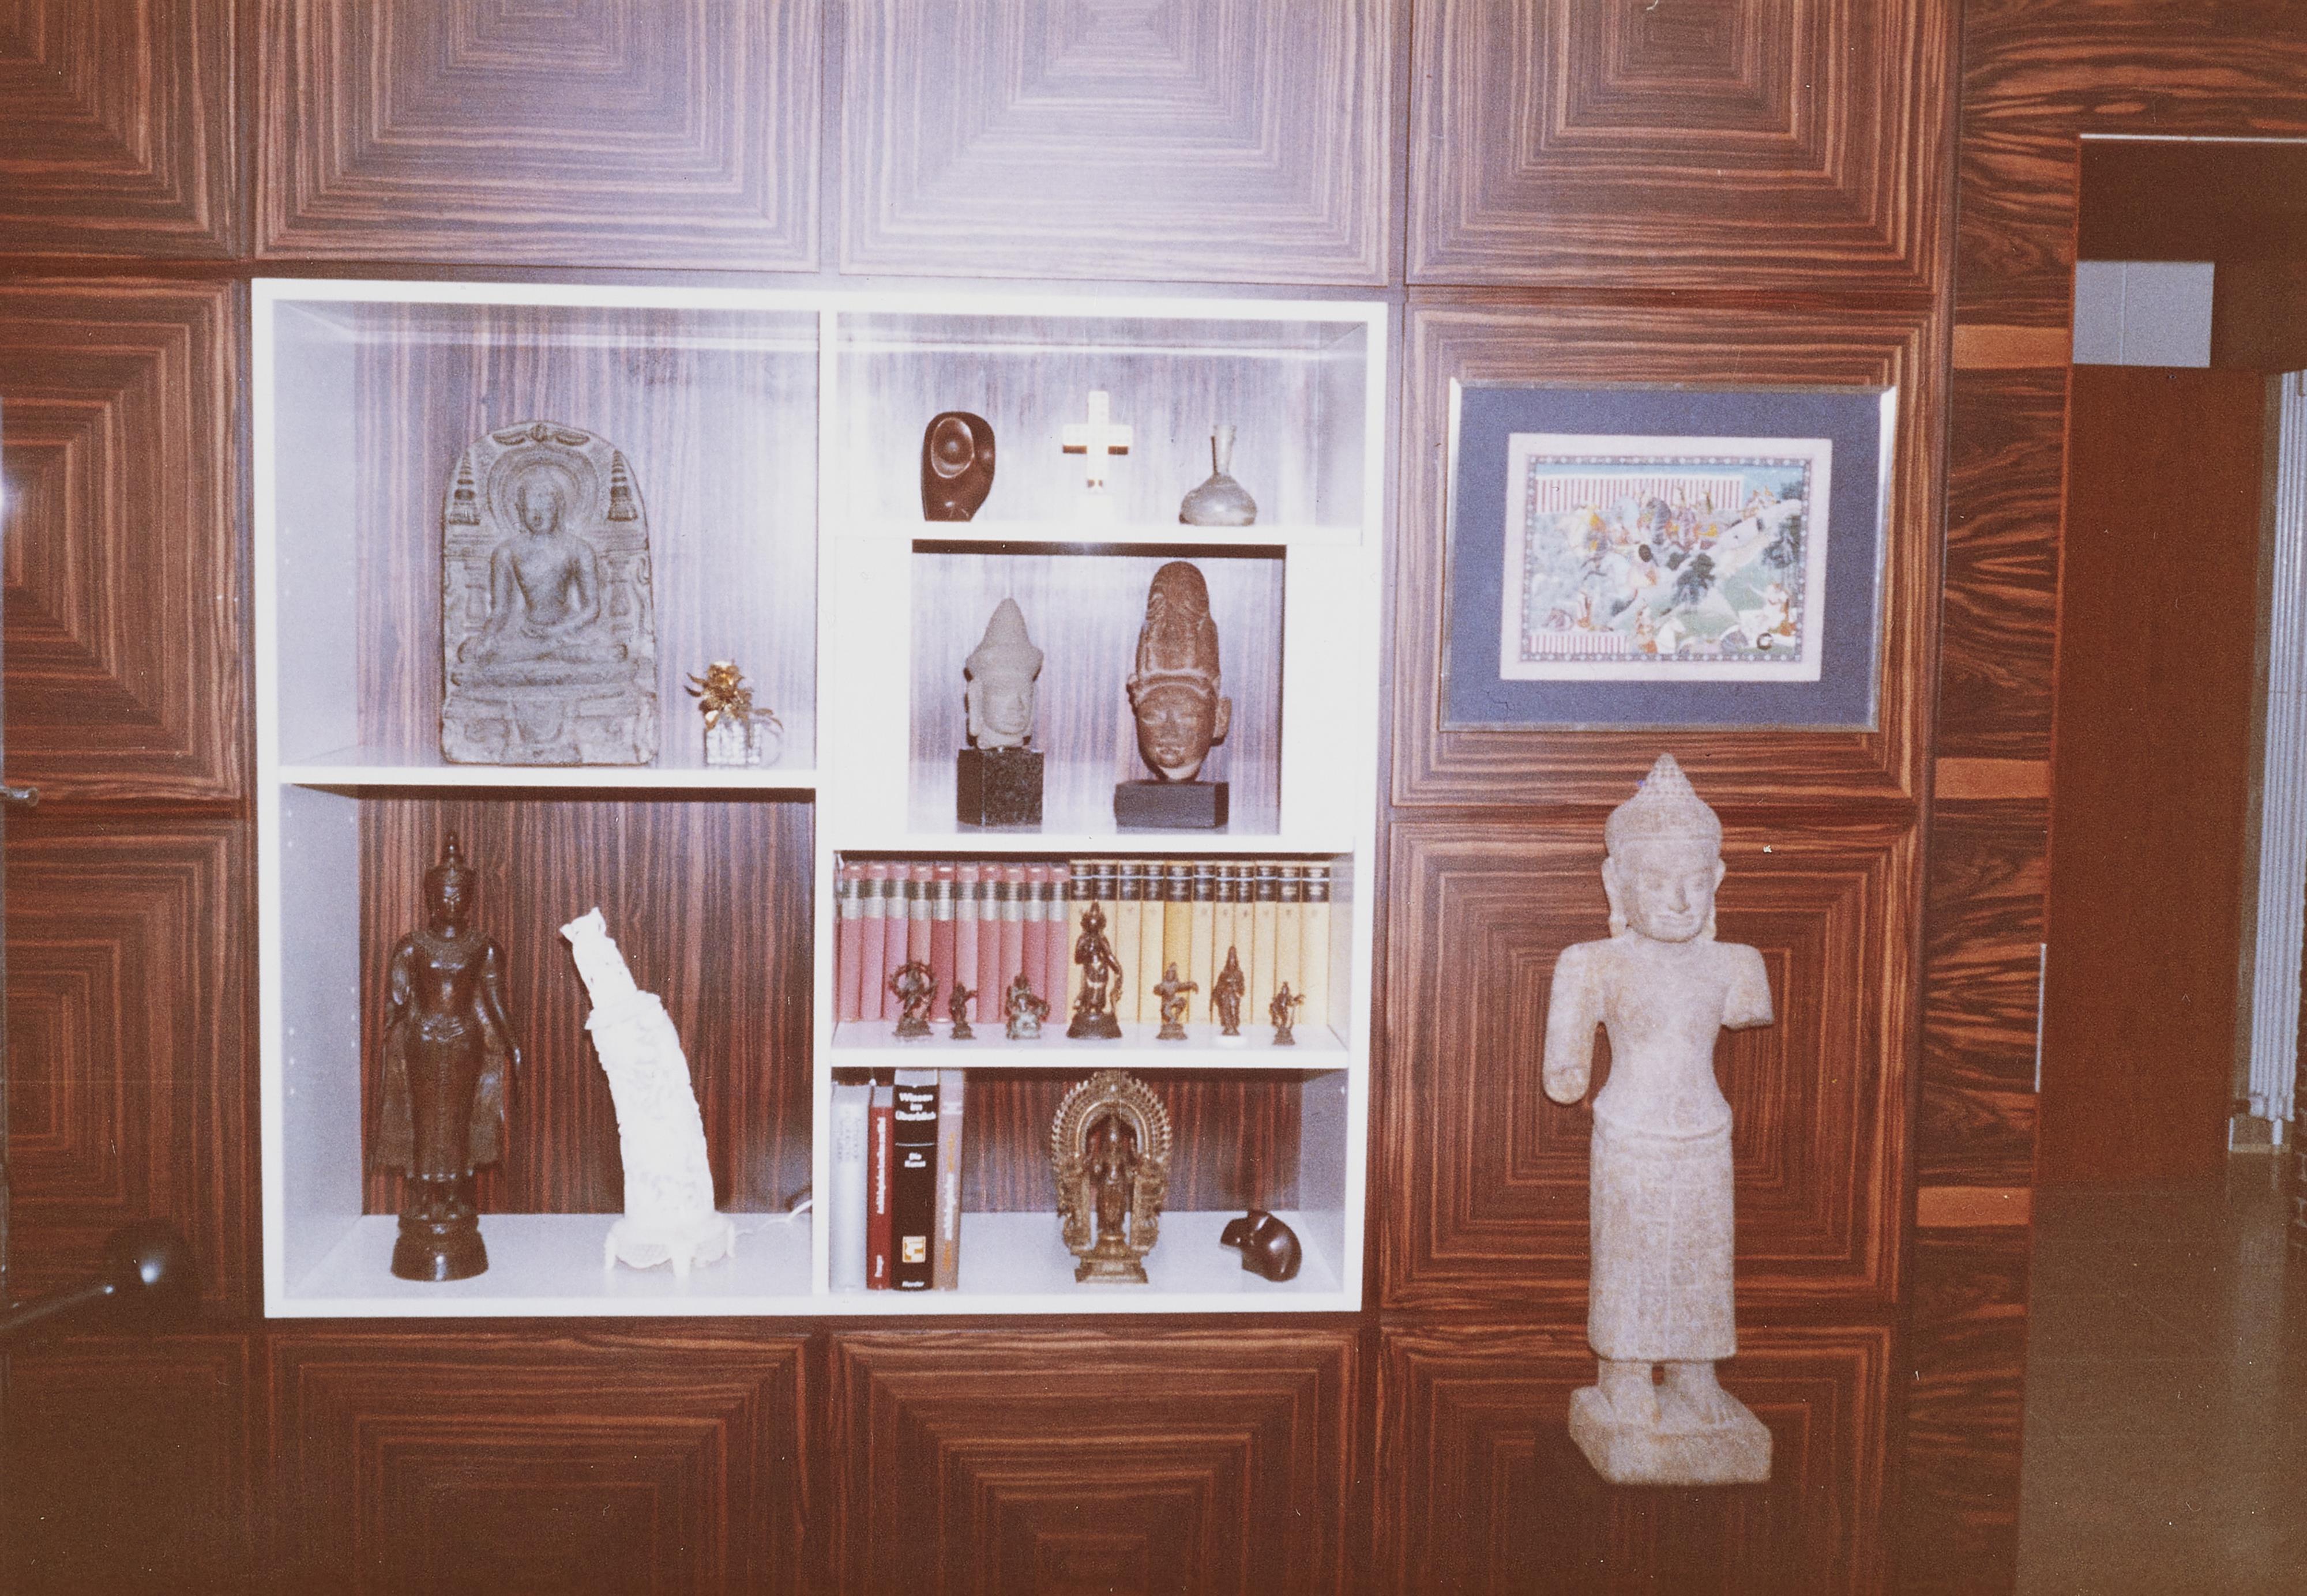 Figur der weiblichen Gottheit, möglicherweise Uma. Sandstein. Thailand/Kambodscha. Stil von Lopburi oder Bayon. 12./13. Jh. - image-5